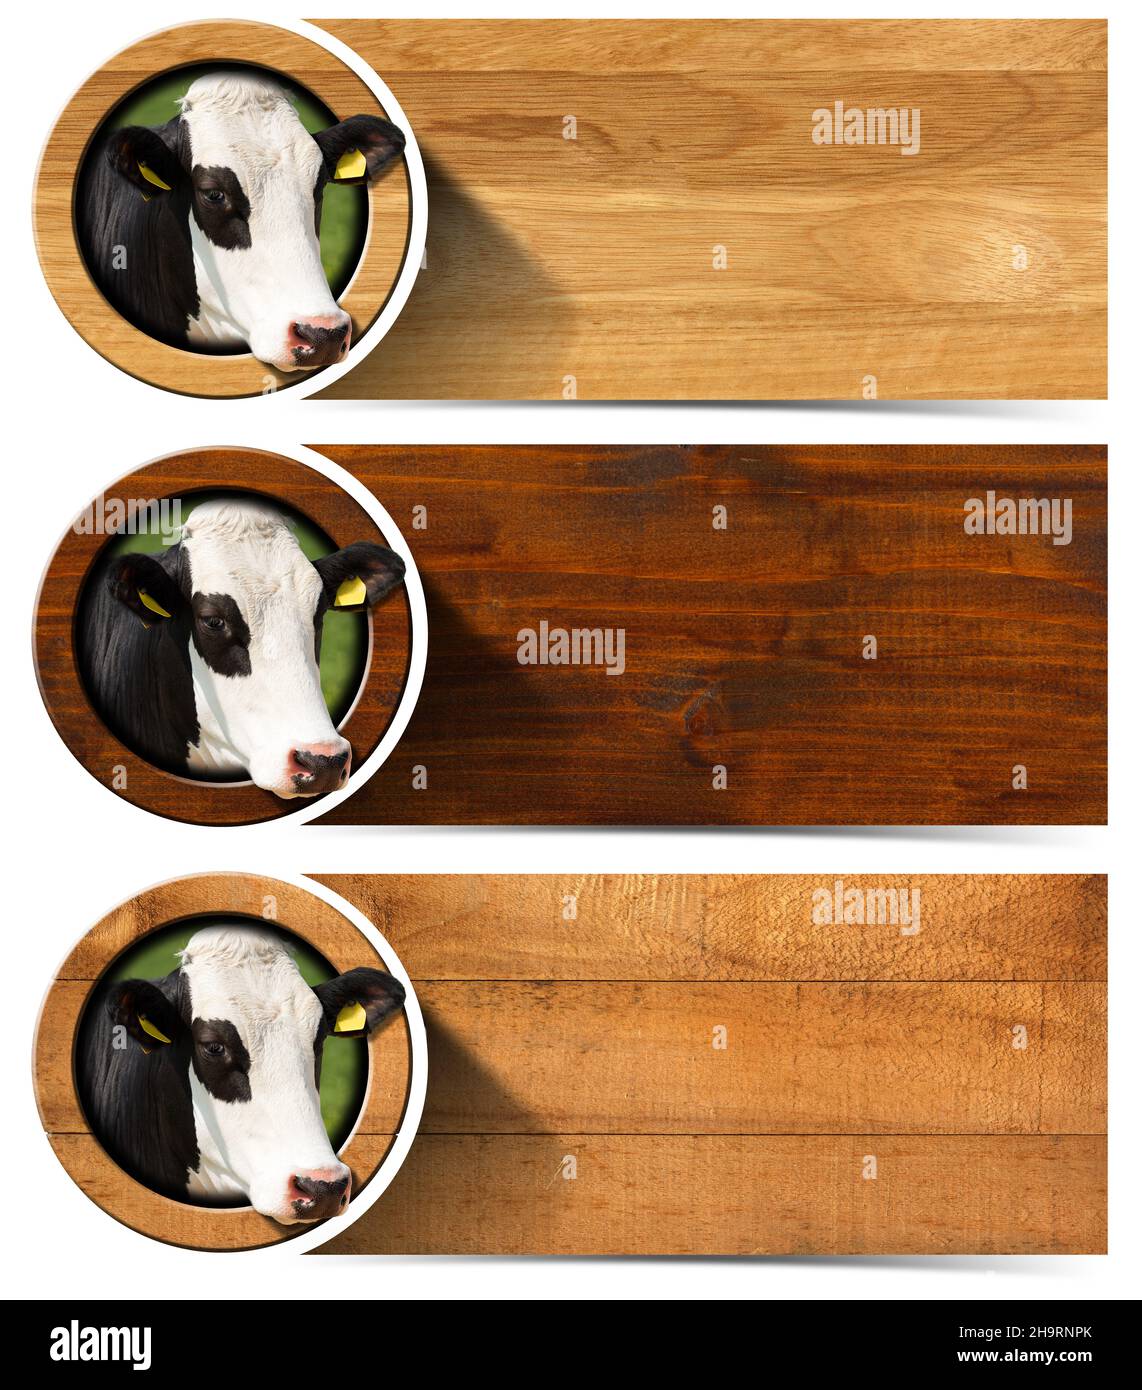 Collezione di tre striscioni orizzontali in legno con spazio per il testo, testa di vacca all'interno di un cerchio. Isolato su sfondo bianco. Foto Stock